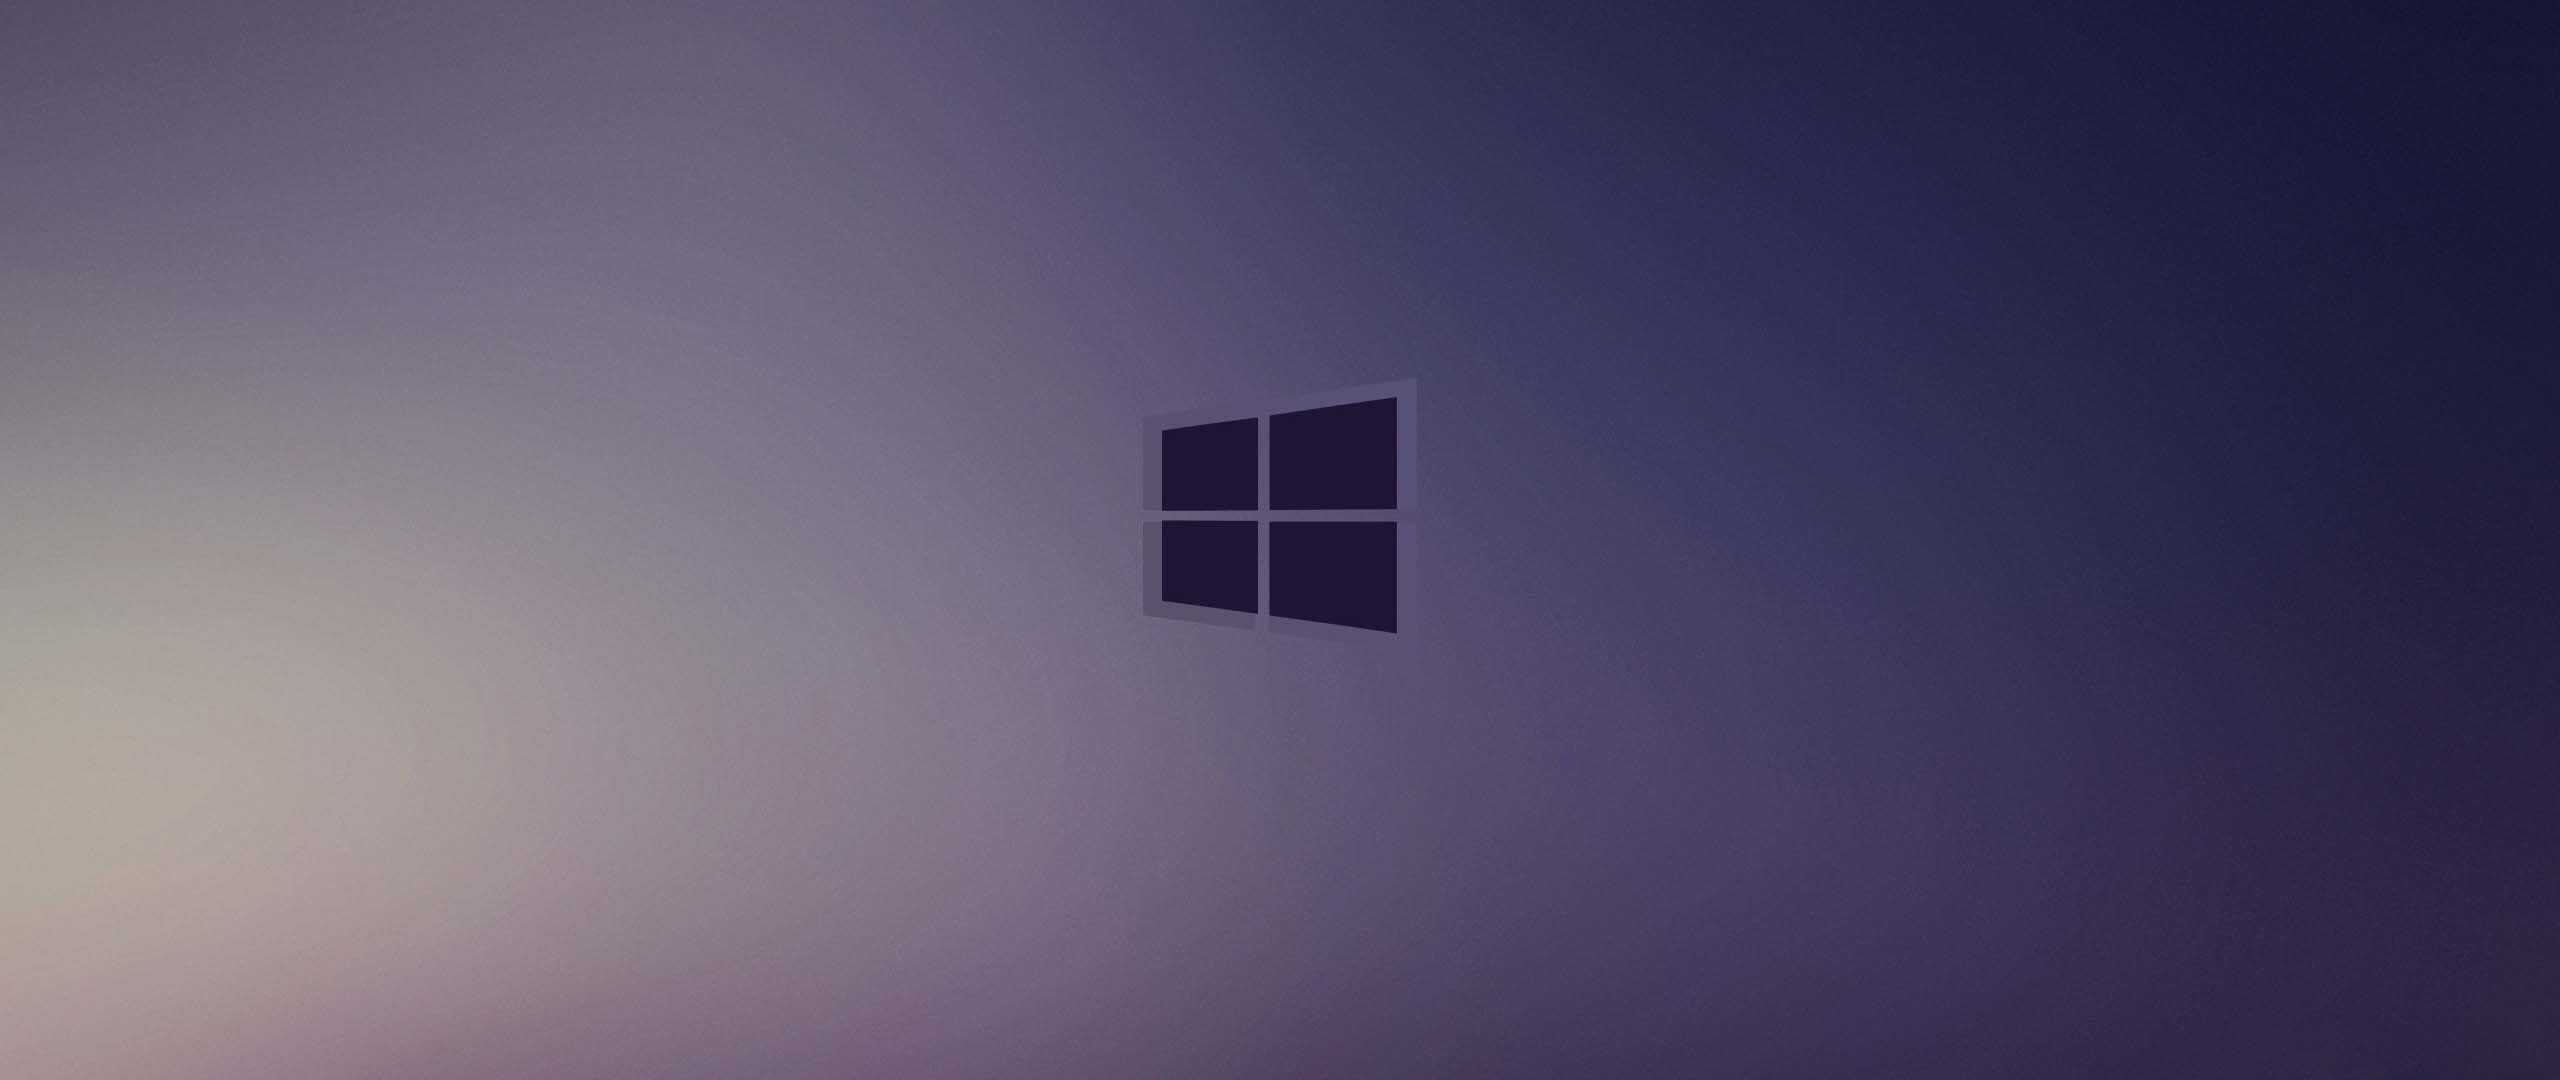 Hình nền Windows 10 màu tím